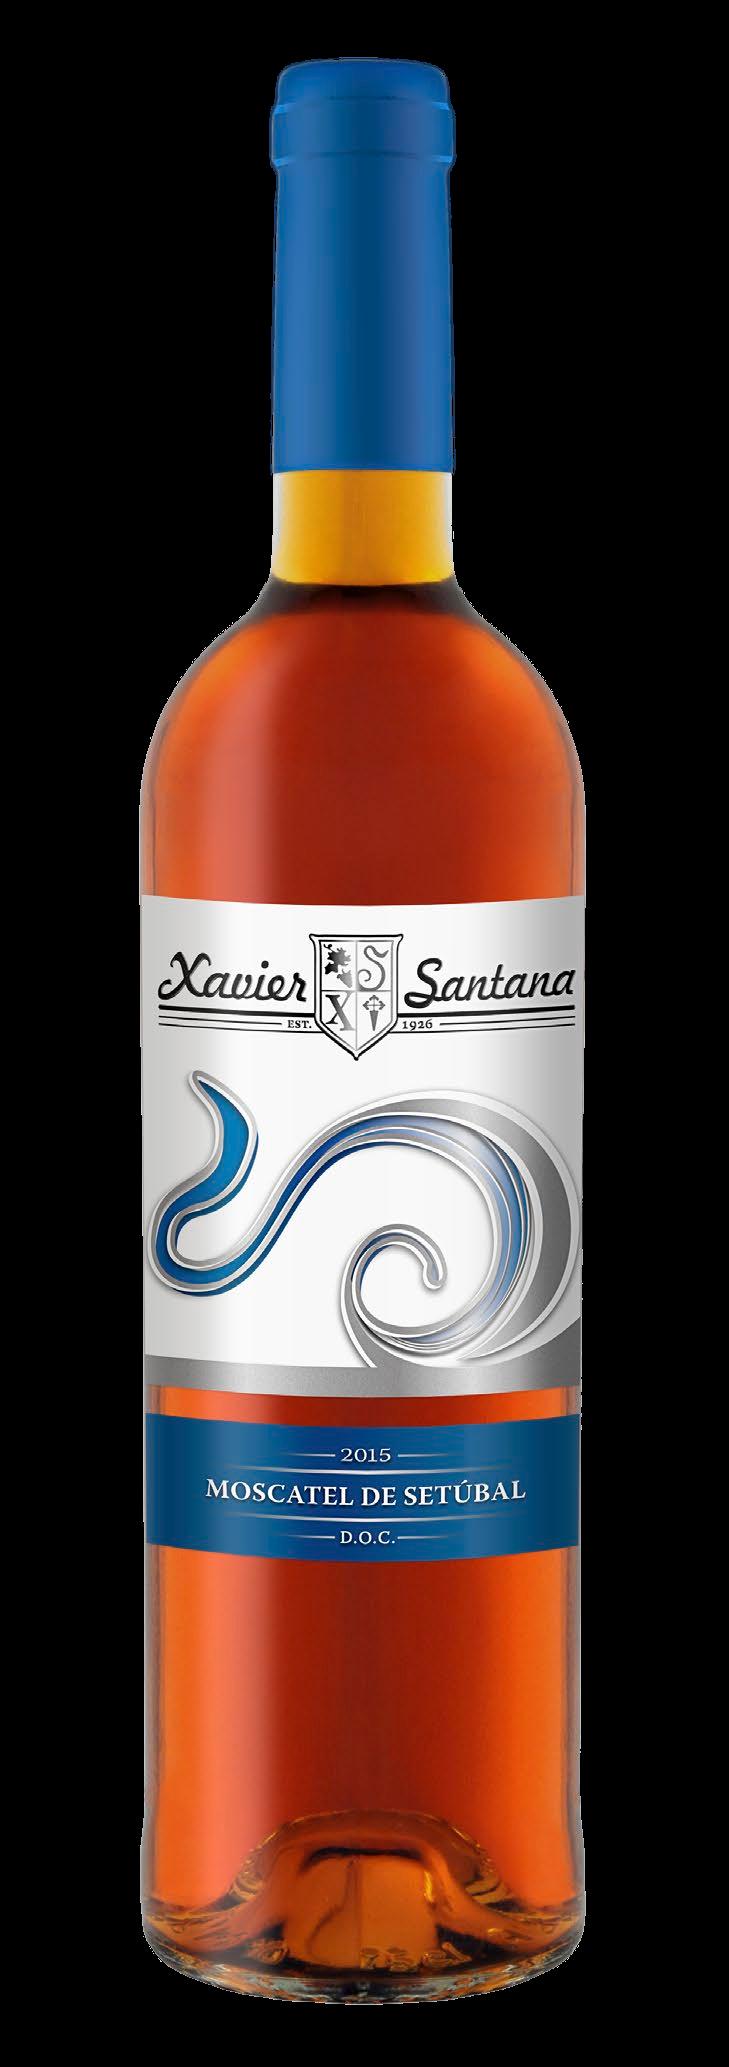 O nosso Moscatel de Setúbal é um vinho generoso premiado, emblemático da região da Península de Setúbal, considerado como uma das preciosidades dos vinhos portugueses de aroma e sabor de assinatura